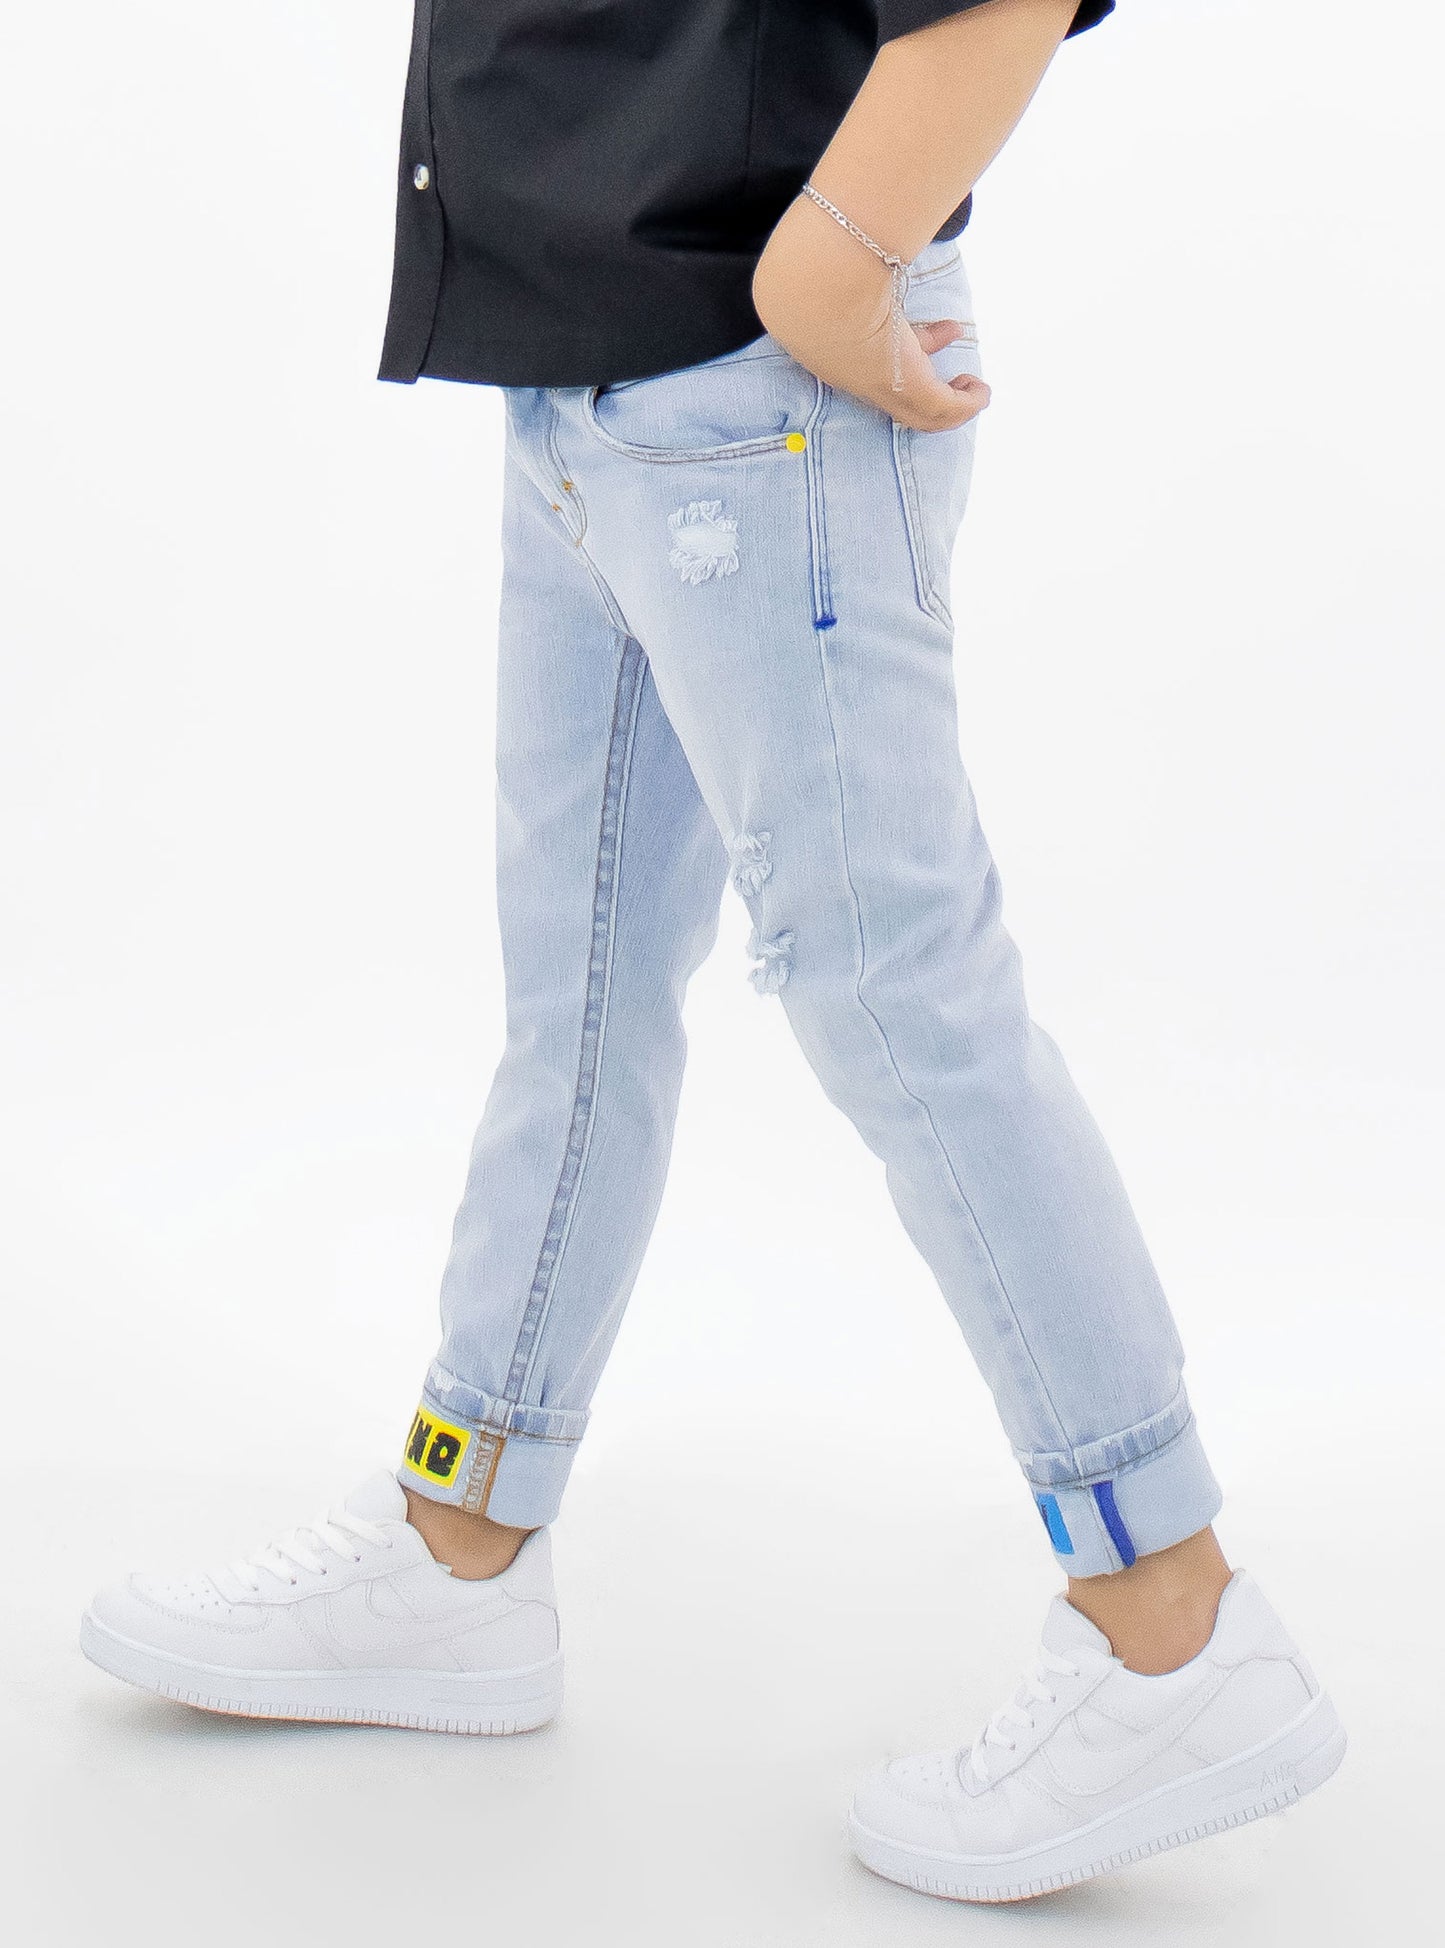 Jeans skinny de color azul claro con estampado